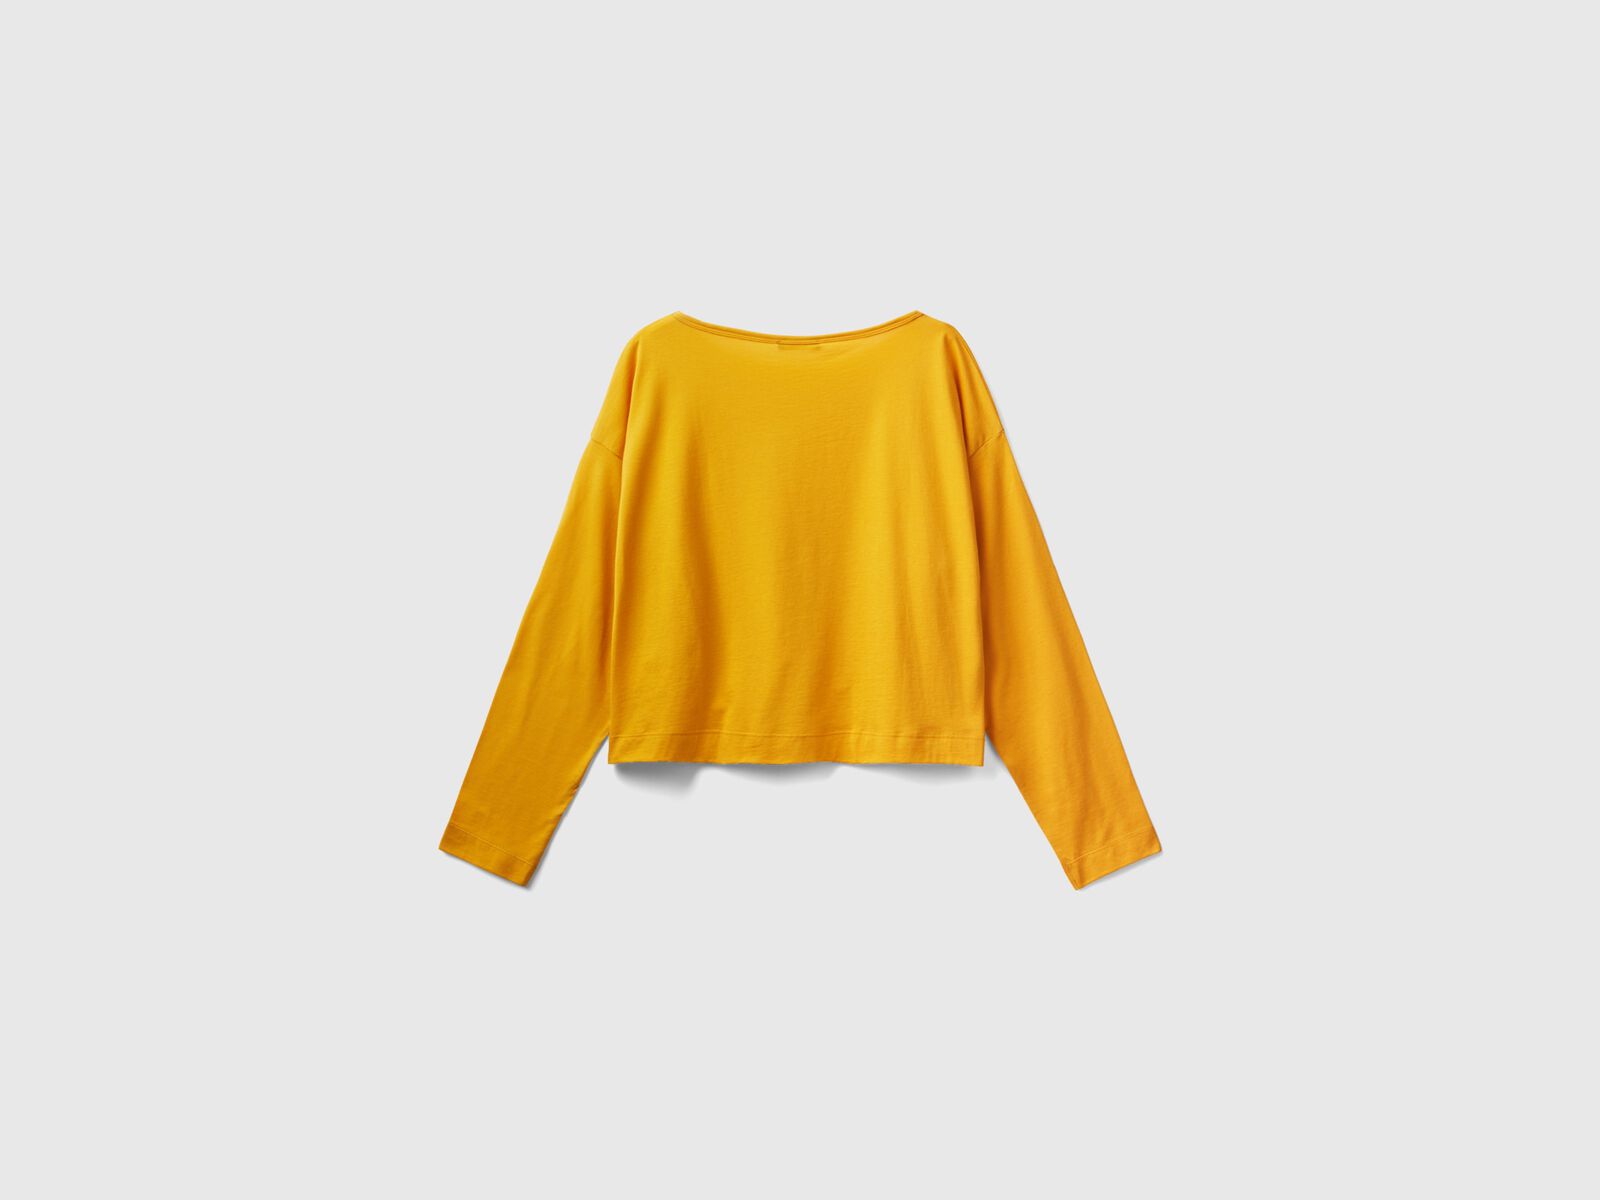 Yellow long | fiber Benetton Yellow t-shirt cotton - ochre